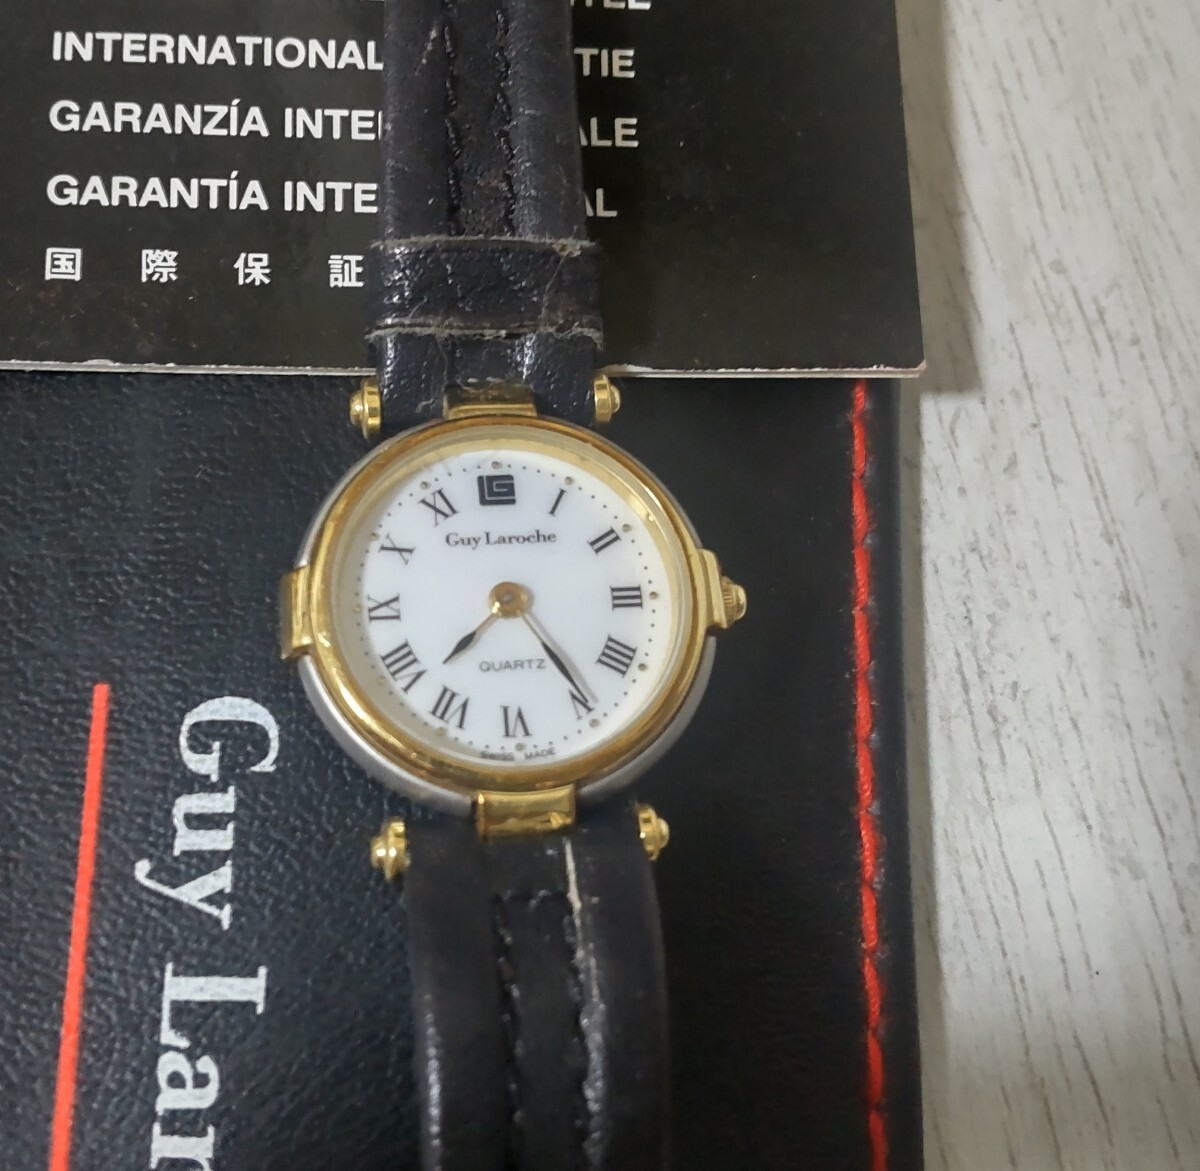 ギラロッシュ レディース腕時計の画像1